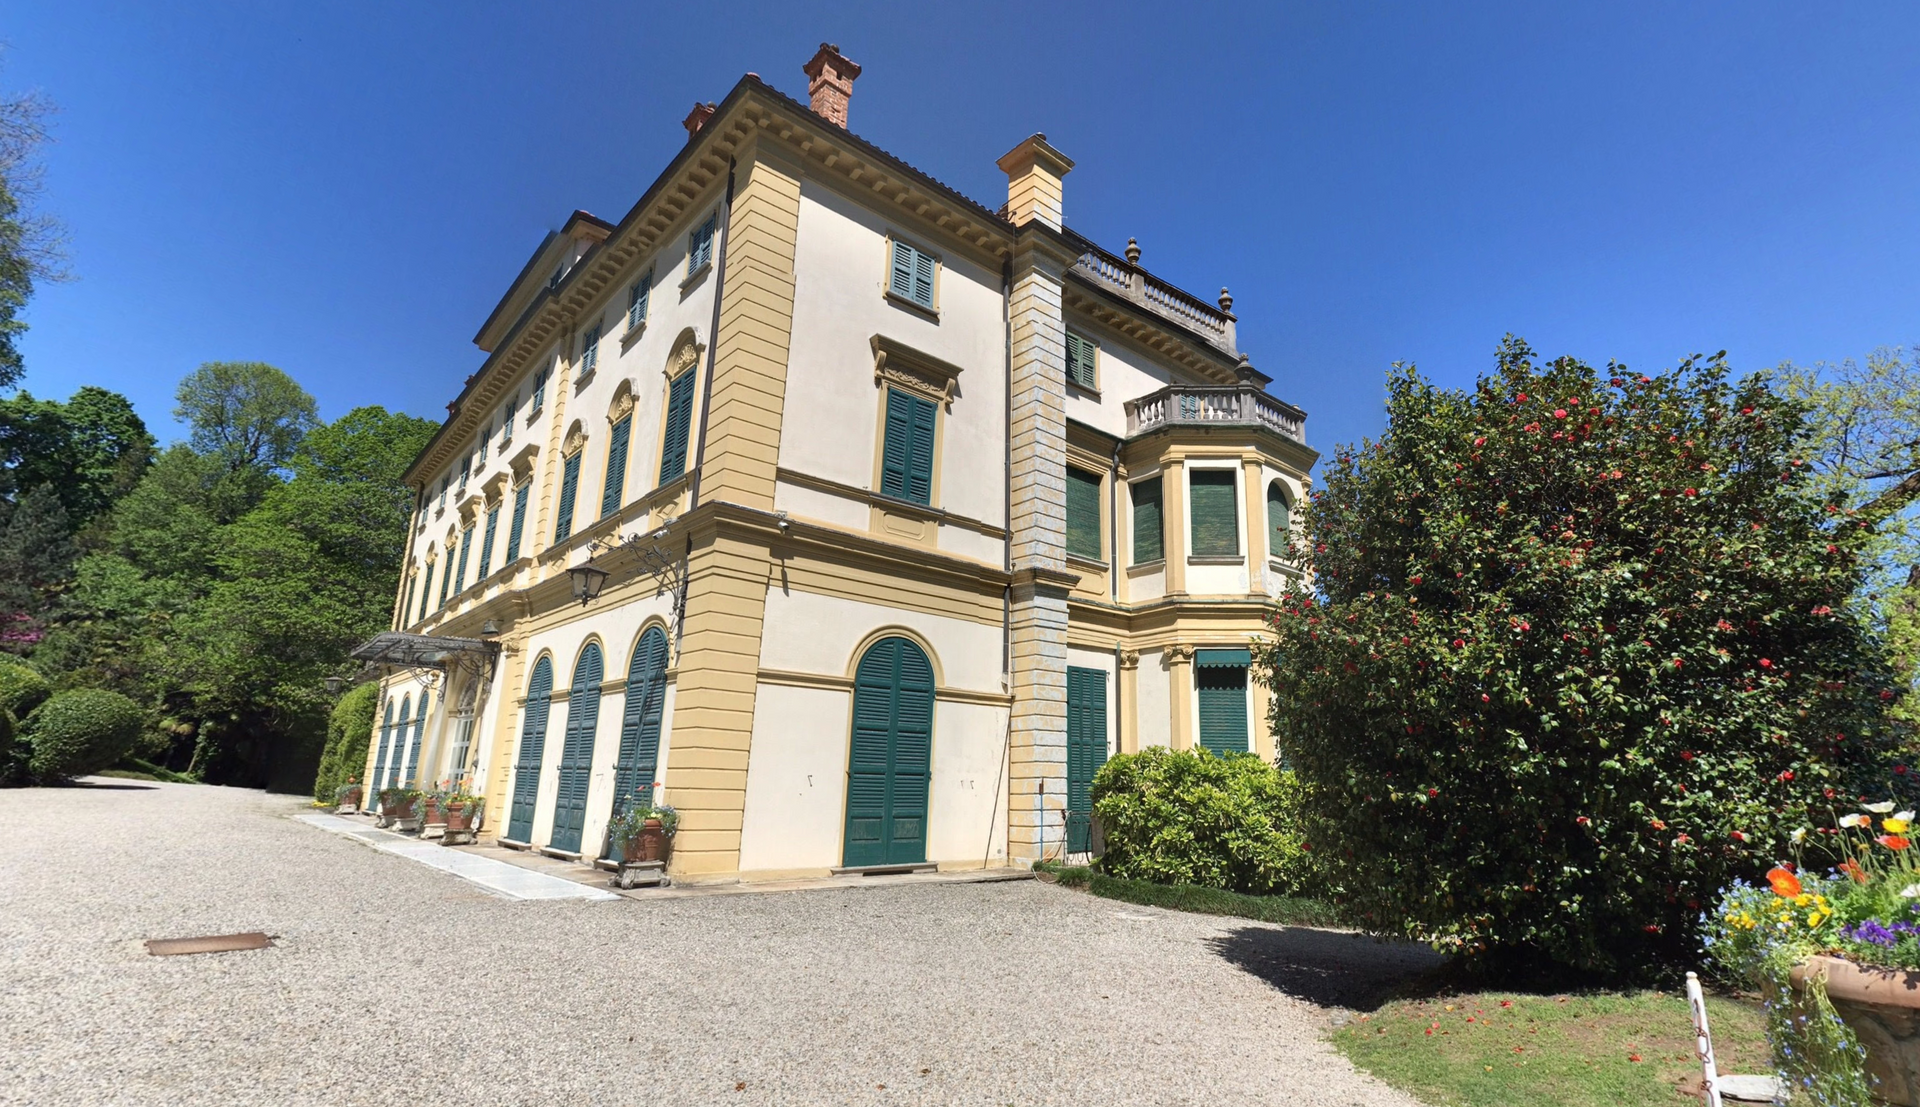 Villa Pallavicino by Google Earth